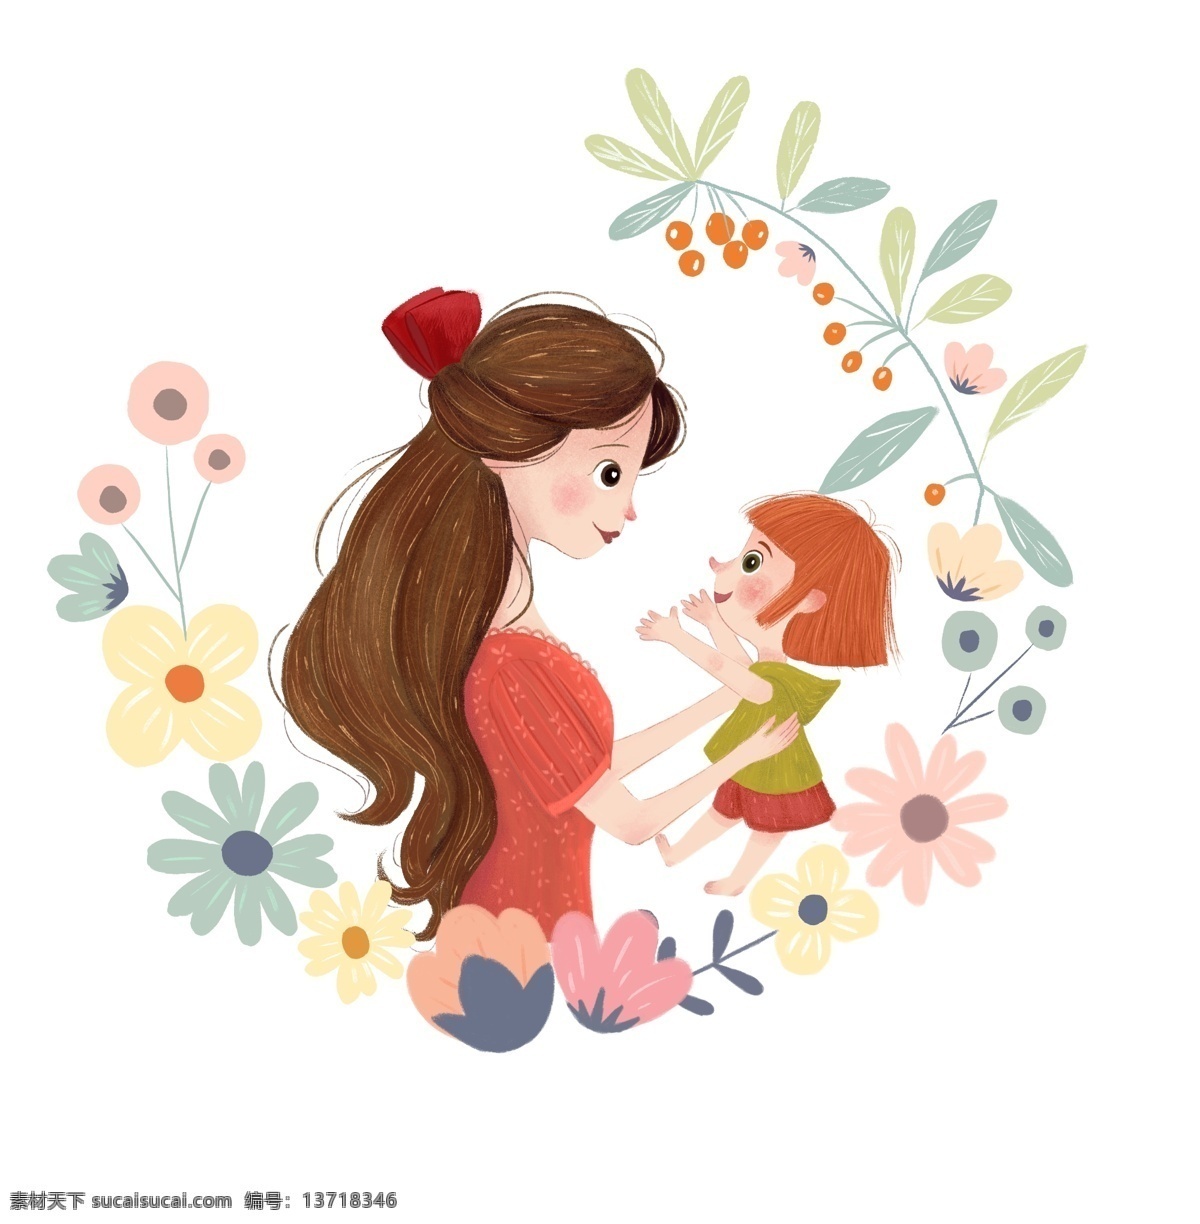 母亲节快乐 妈妈我爱您 妈妈要抱抱 妈妈的的爱 献给 美丽 妈妈 母爱如花芬芳 如花盛开